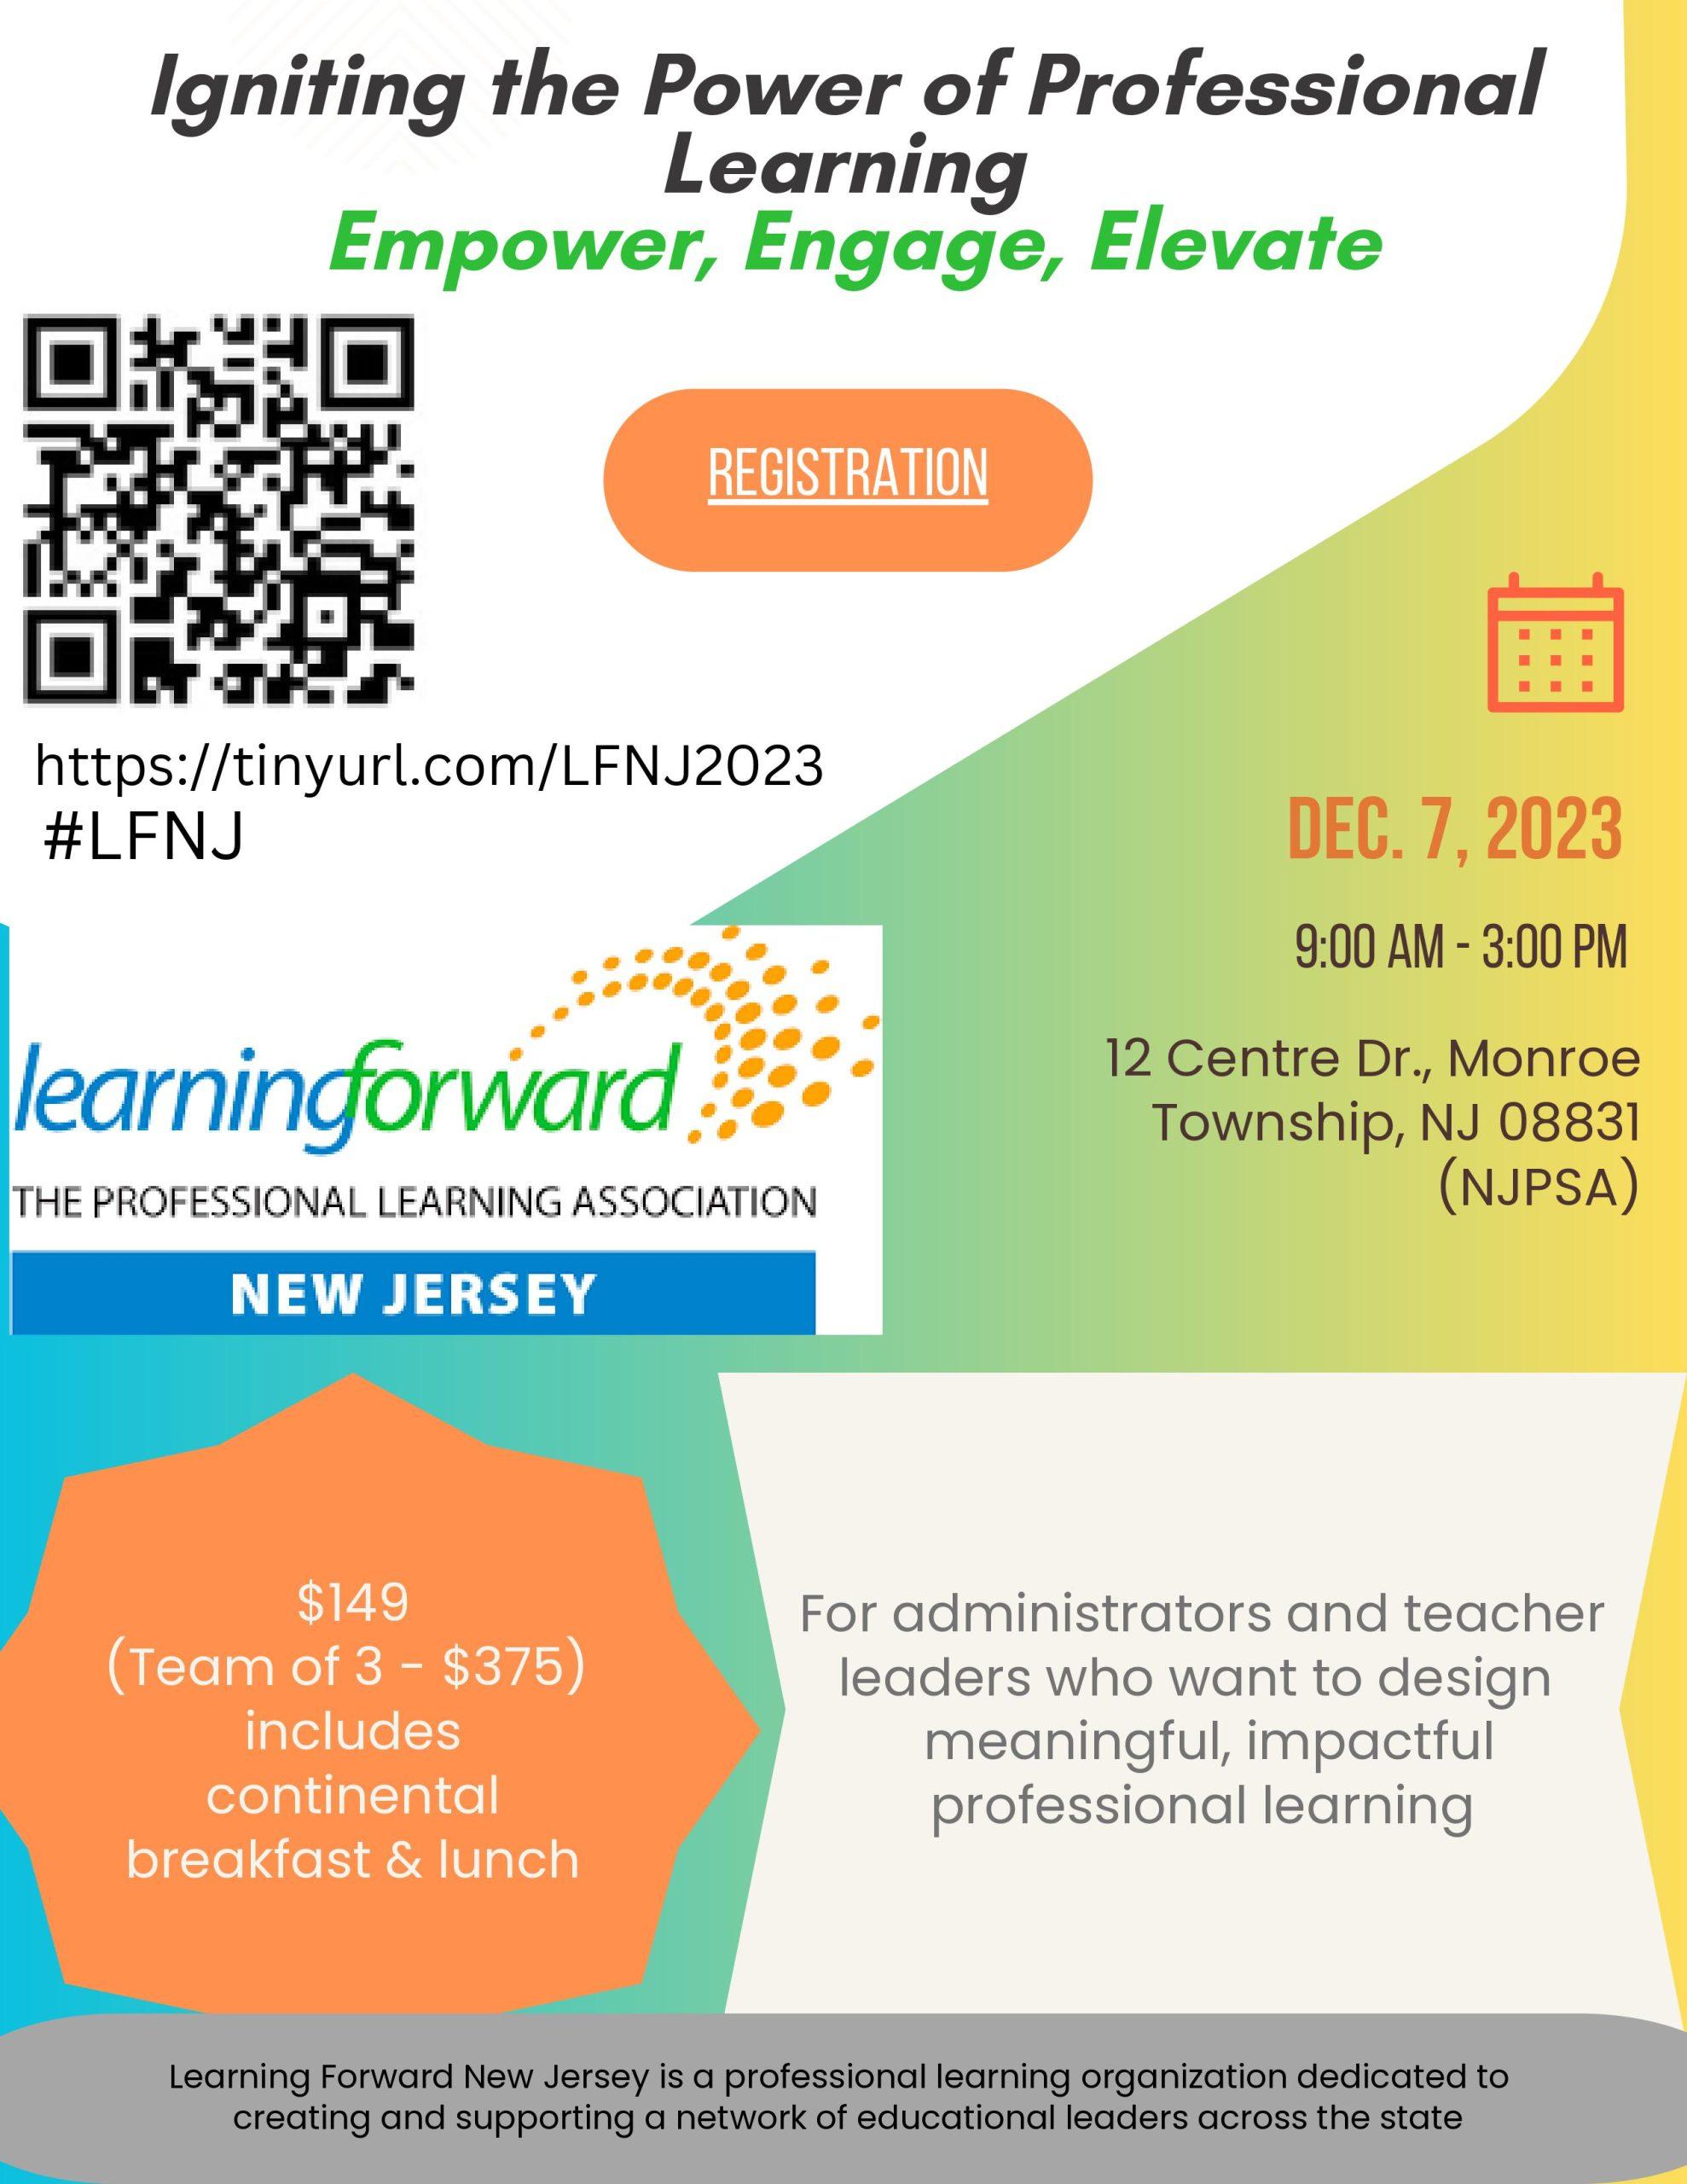 LFNJ23 Conference Flyer